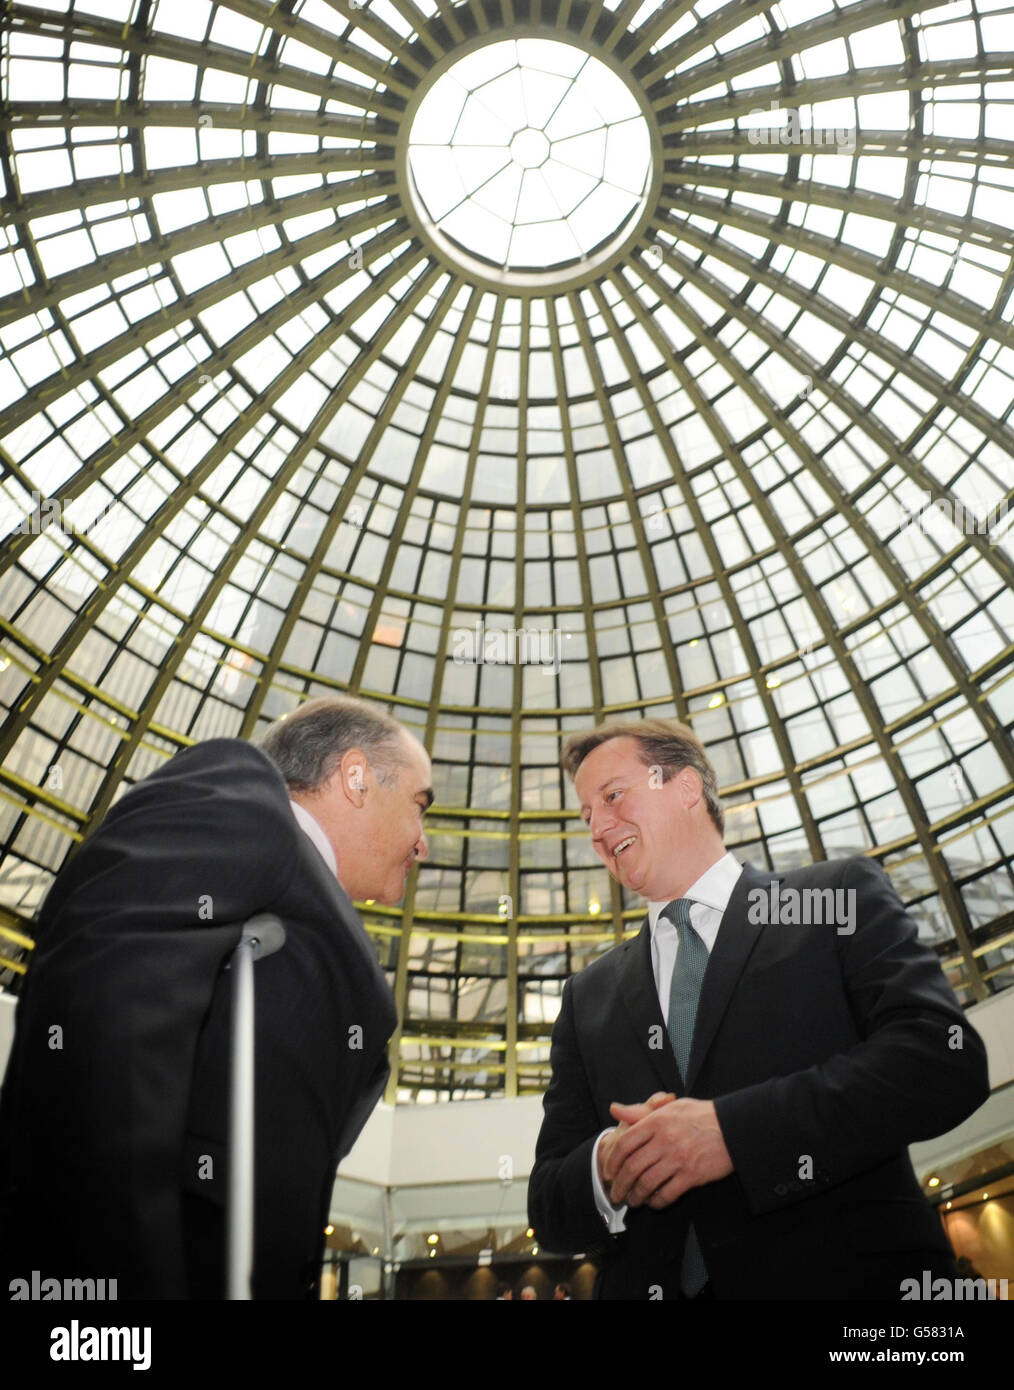 Premierminister David Cameron besucht die mexikanische Börse mit  Börsenpräsident Luis Tellez (links) in Mexiko-Stadt, während eines  zweitägigen Besuchs in der Hauptstadt, wo er später Gespräche mit Präsident  Filipe Calderon führen wird Stockfotografie -